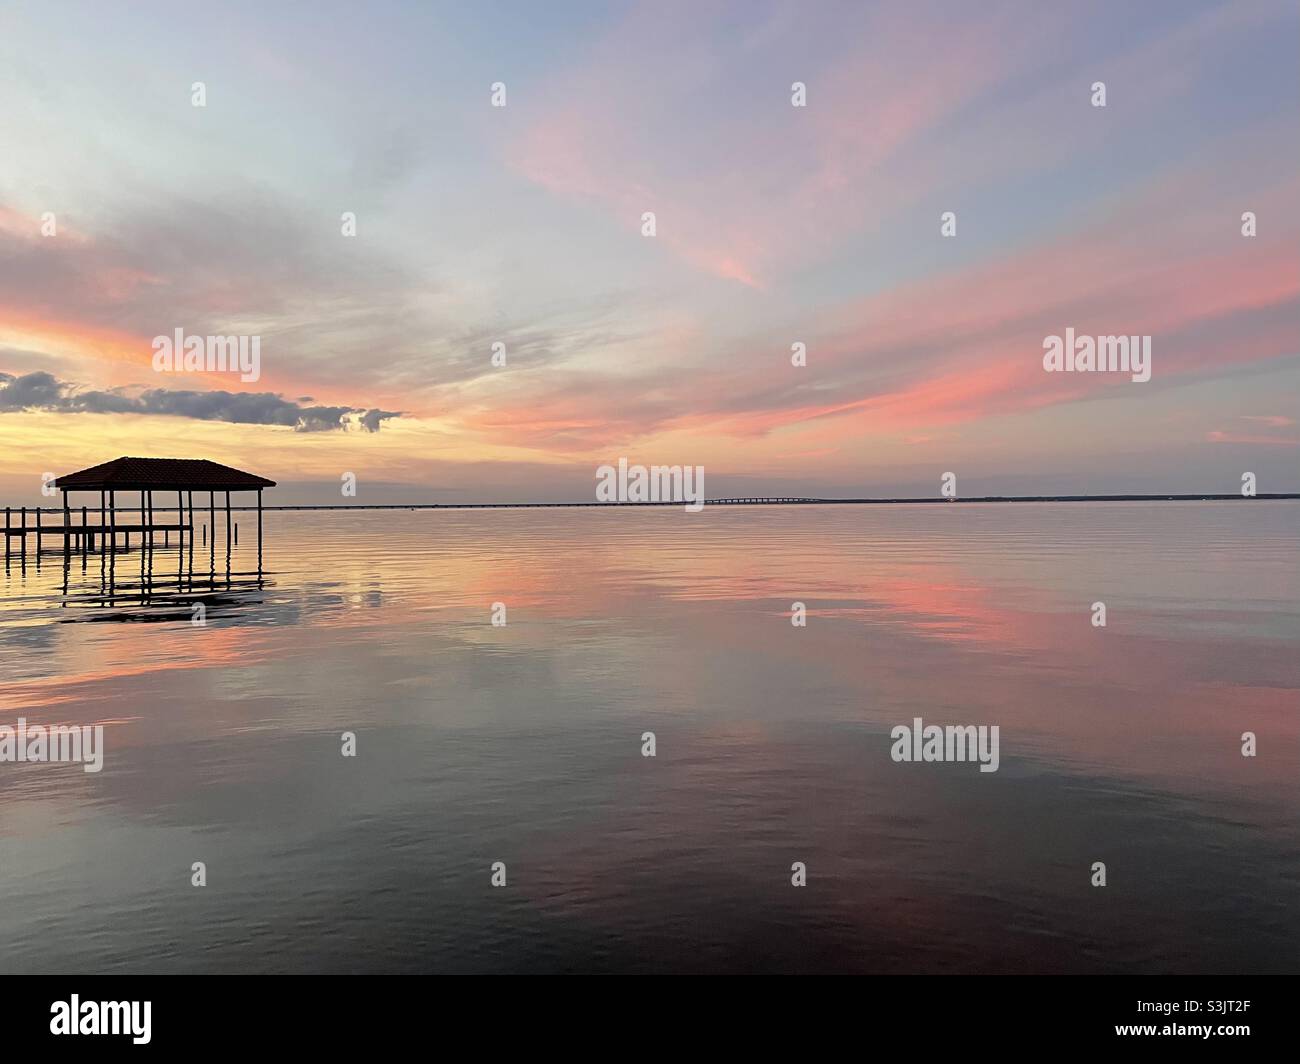 Farbenfrohe, pastellfarbene Sonnenuntergänge über dem ruhigen Wasser der Bucht mit Bootsanlegestelle und Reflexionen Stockfoto